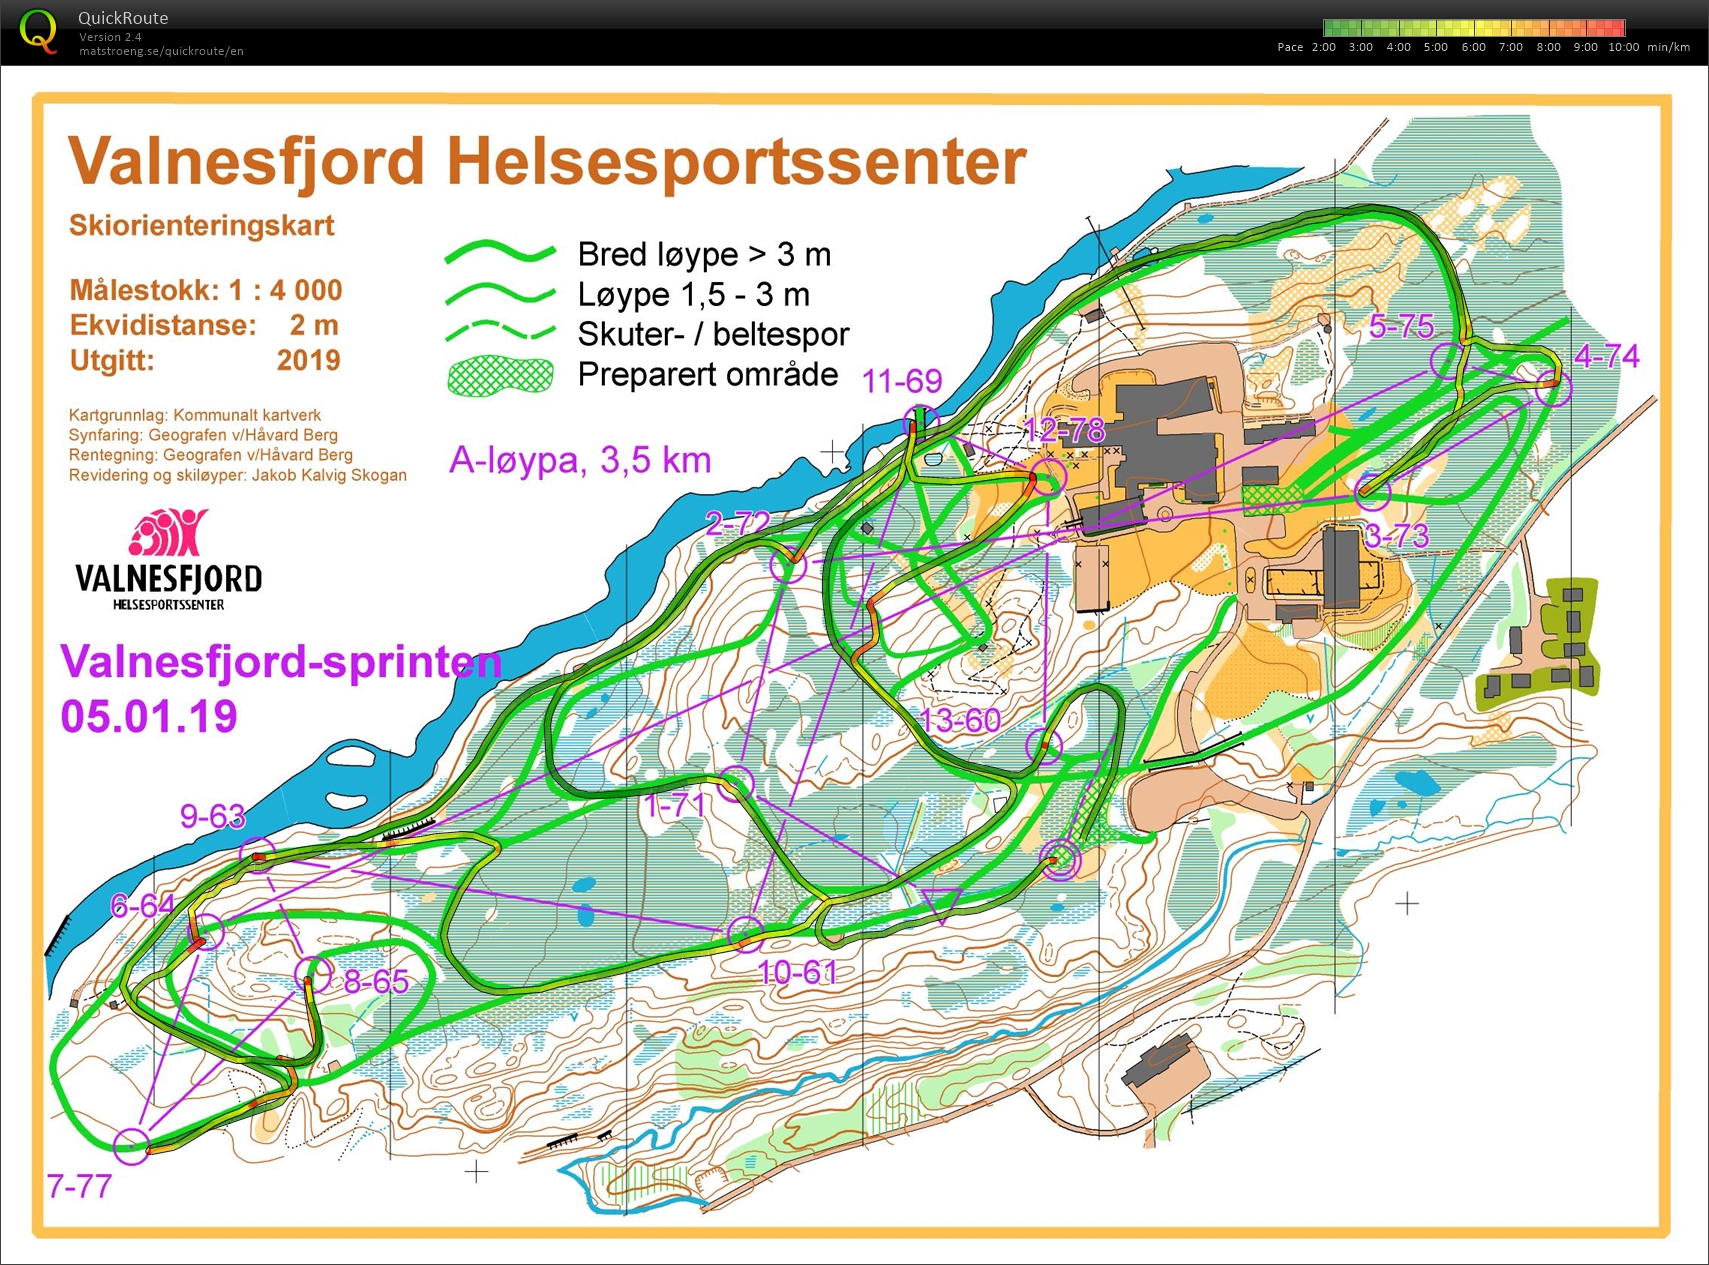 Valnesfjordsprinten Skiorientering (2020-01-05)